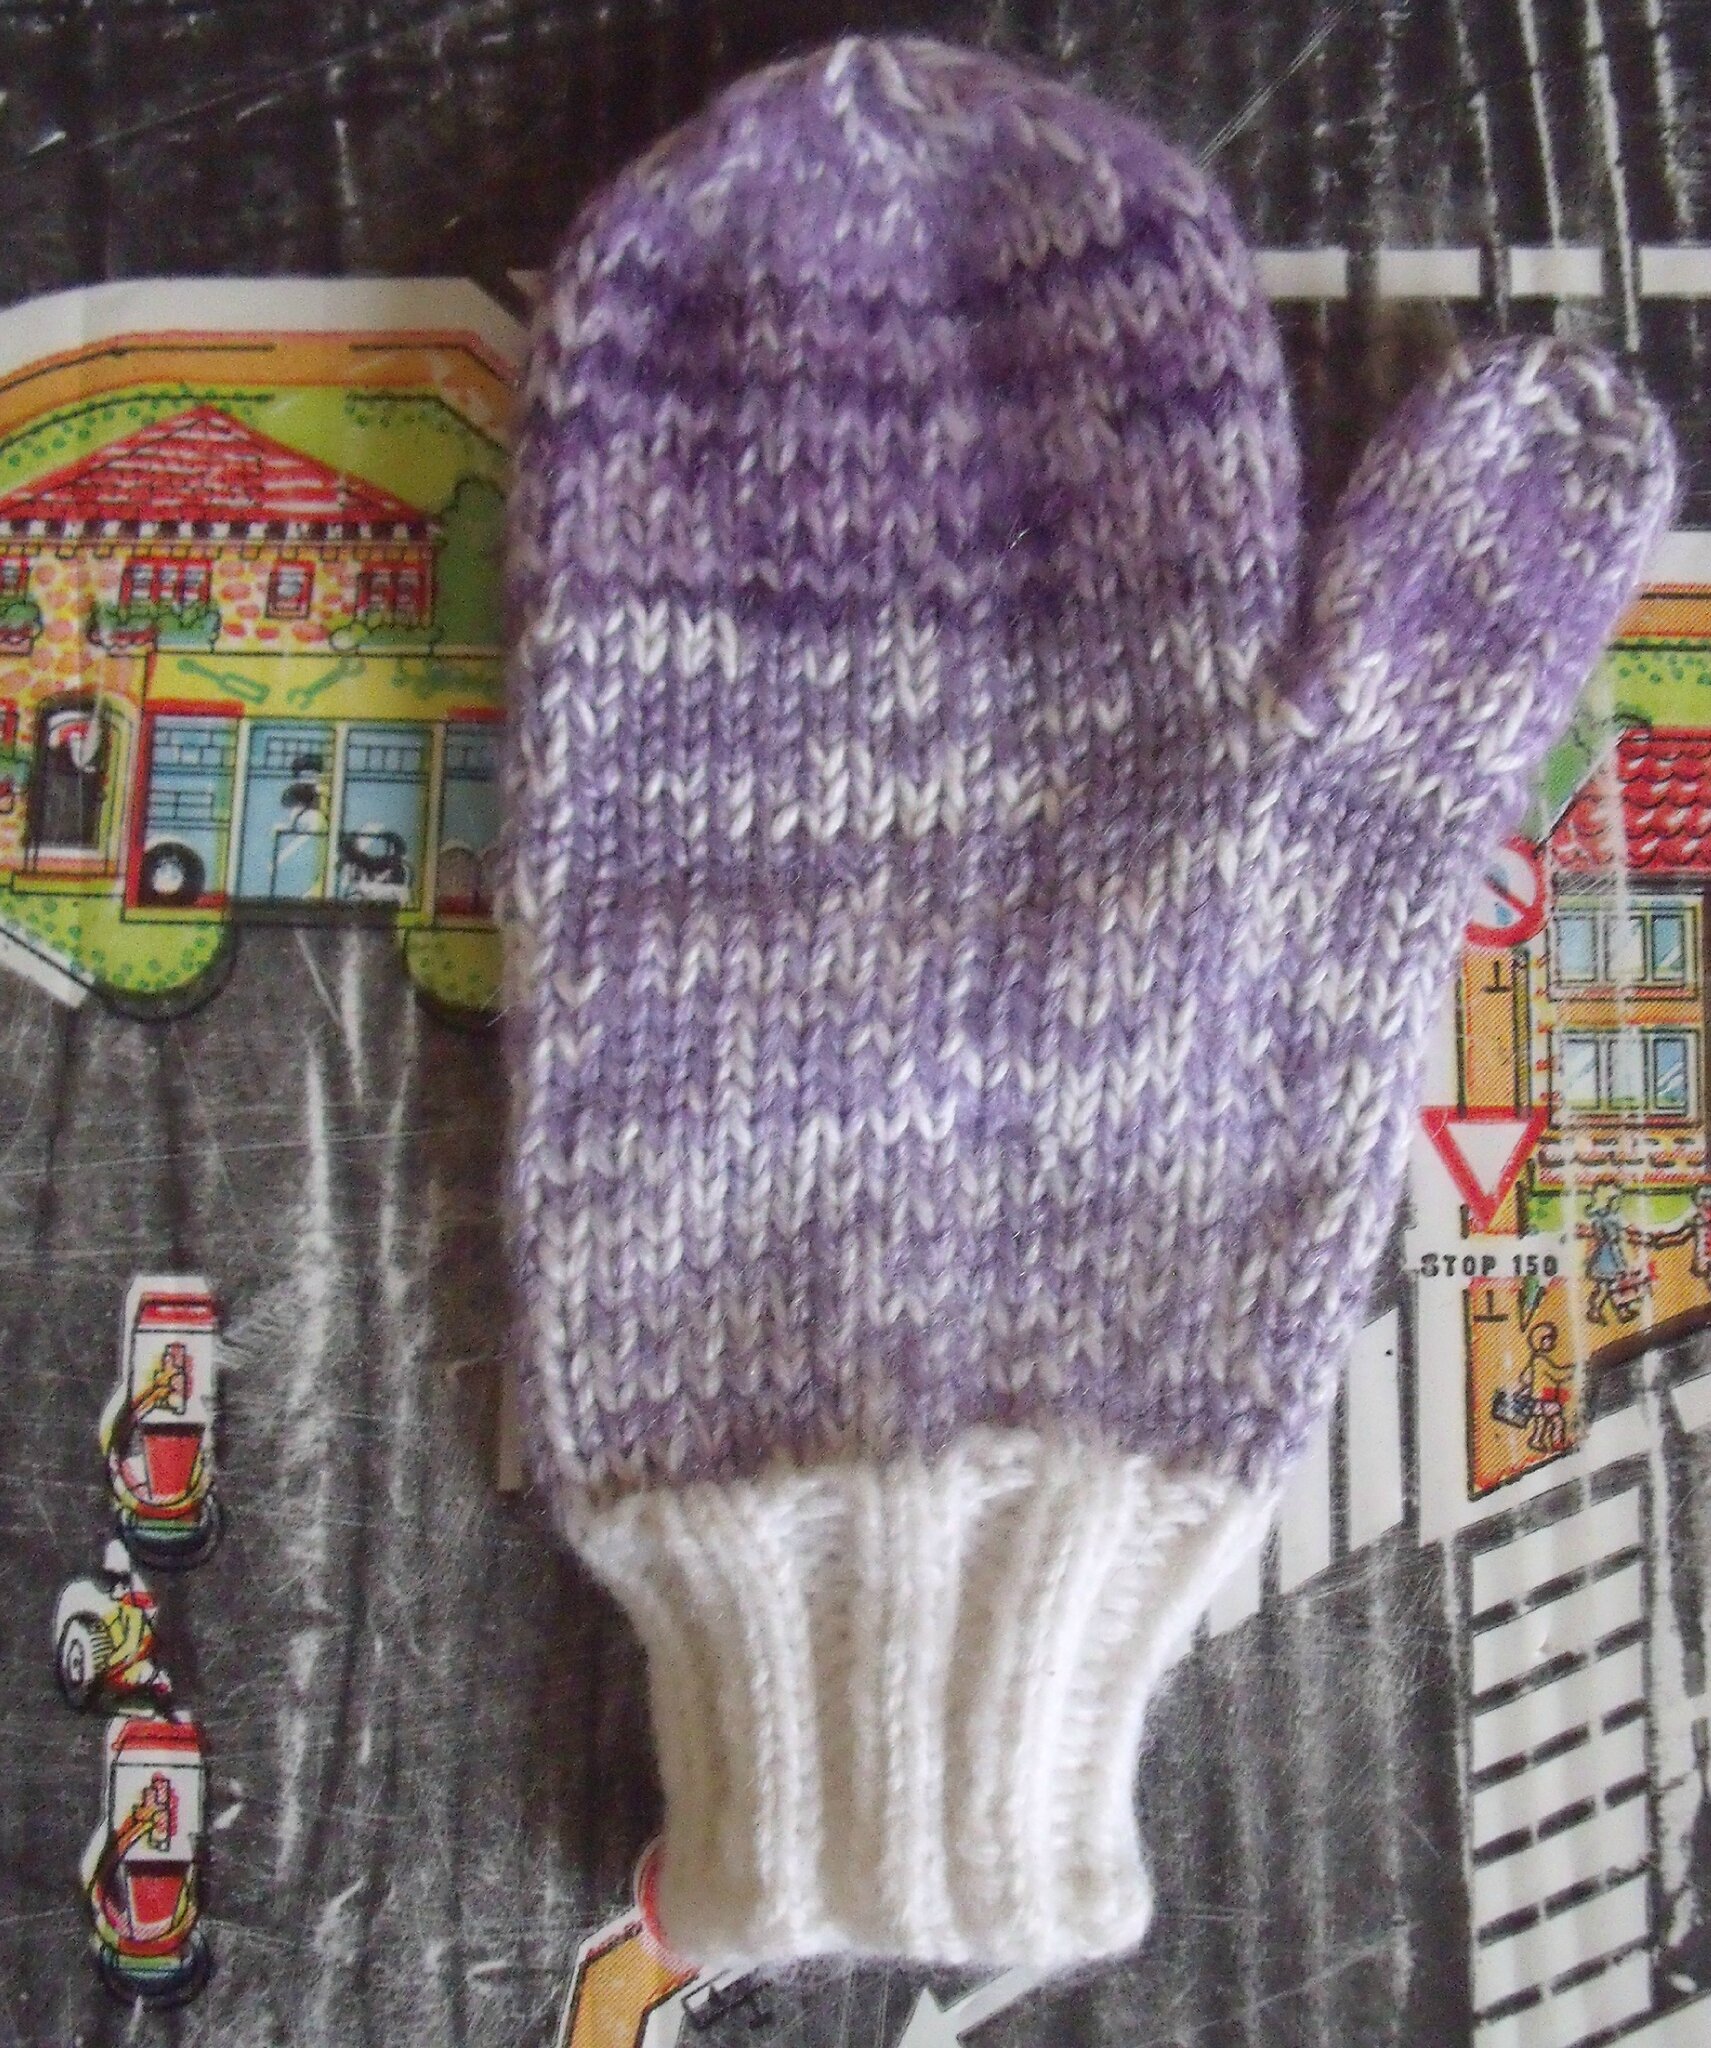 Tricoter des moufles enfant avec le pouce / Tuto Knitting mittens